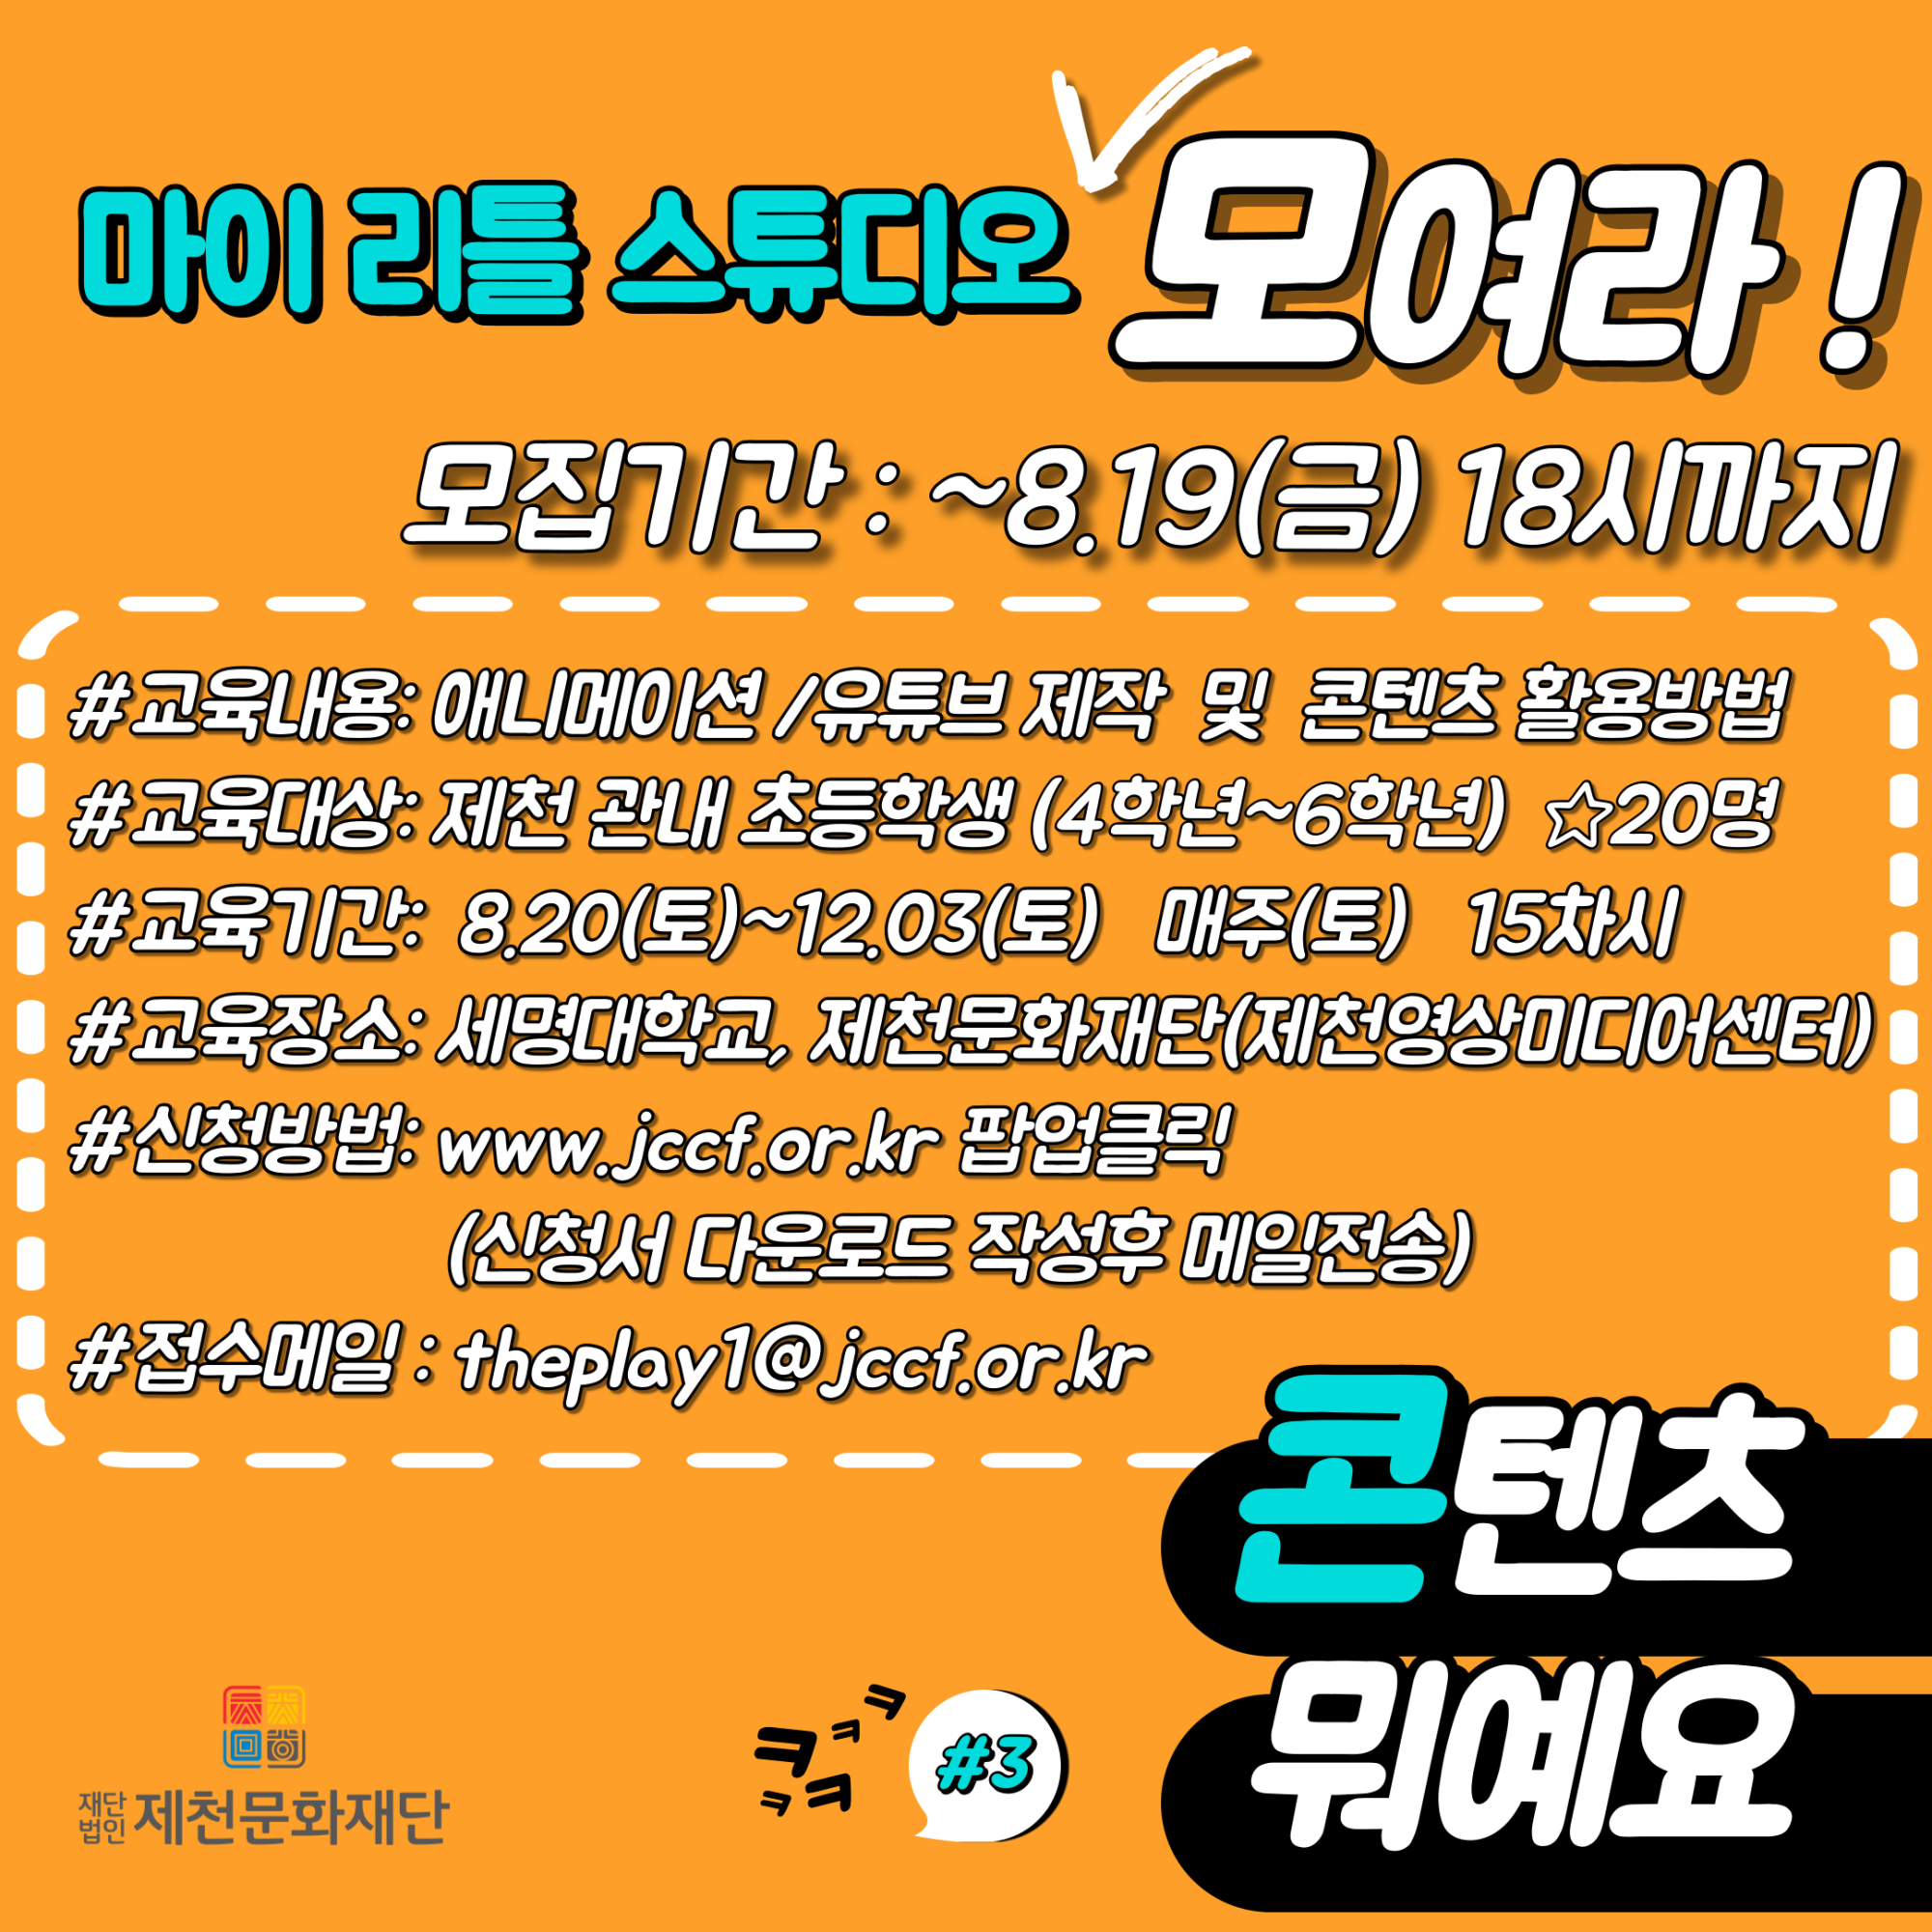 (재)제천문화재단 영상미디어팀_2022 마이리틀스튜디오 원본팝업-01